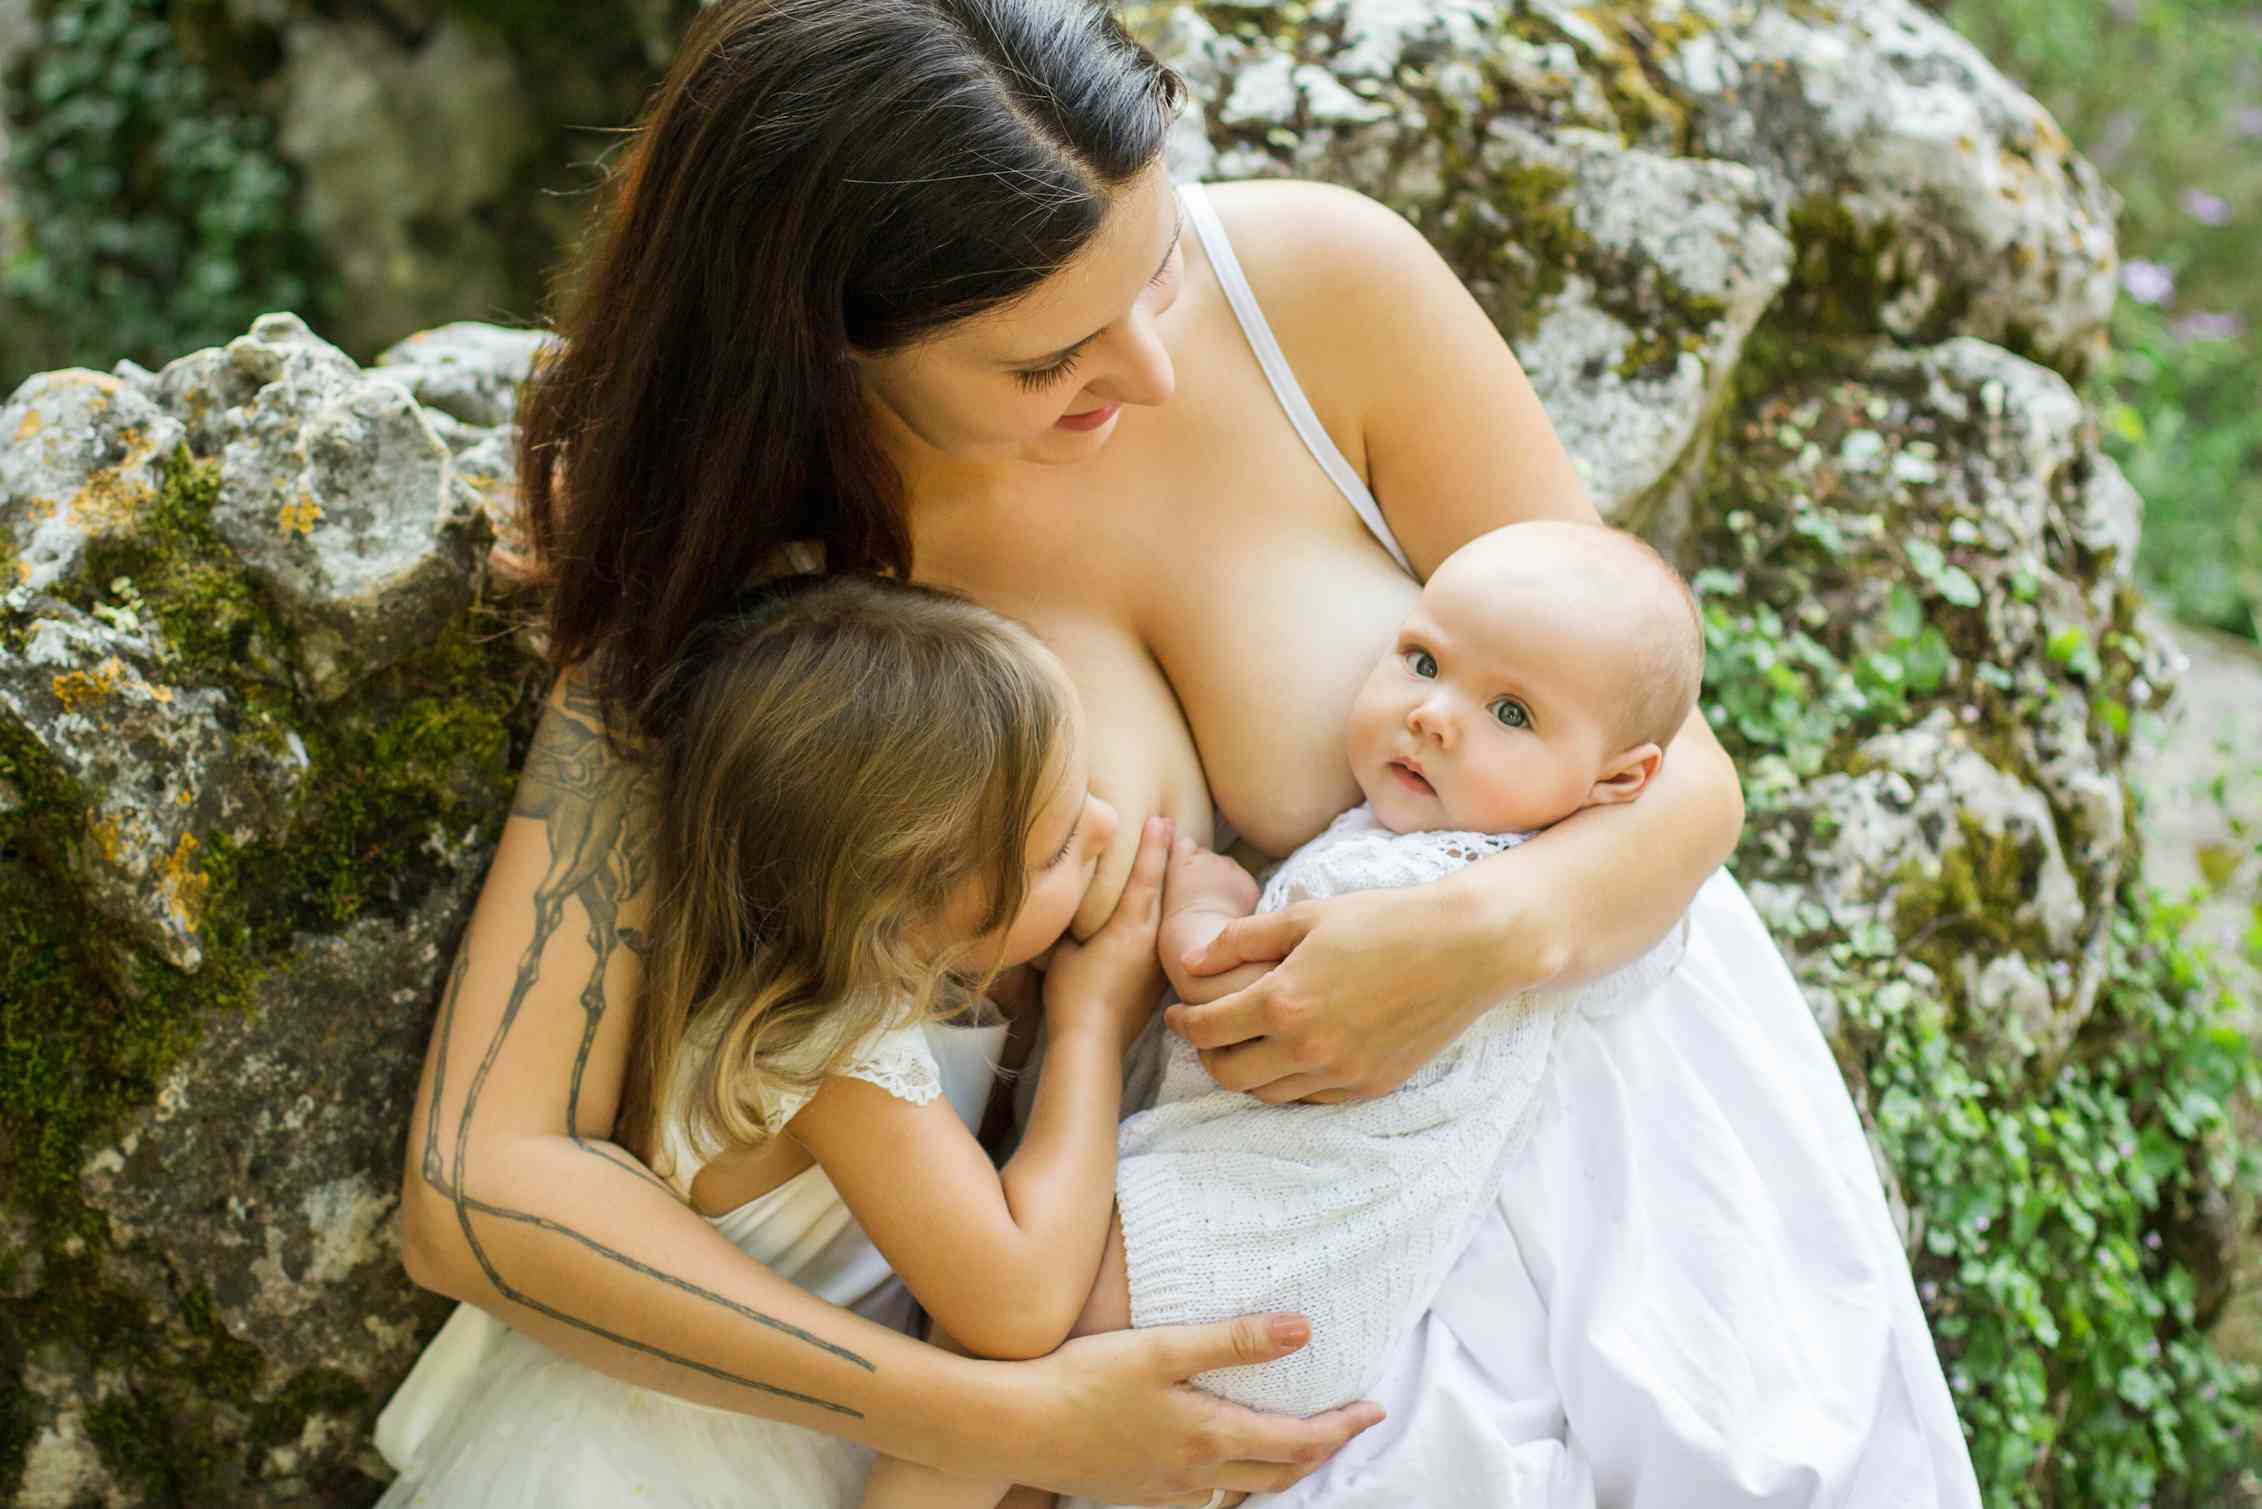 Бесплатное видео взрослым мама. Парамеева Breastfeeding. Женщина с ребенком. Кормление грудью. Тандемное вскармливание.